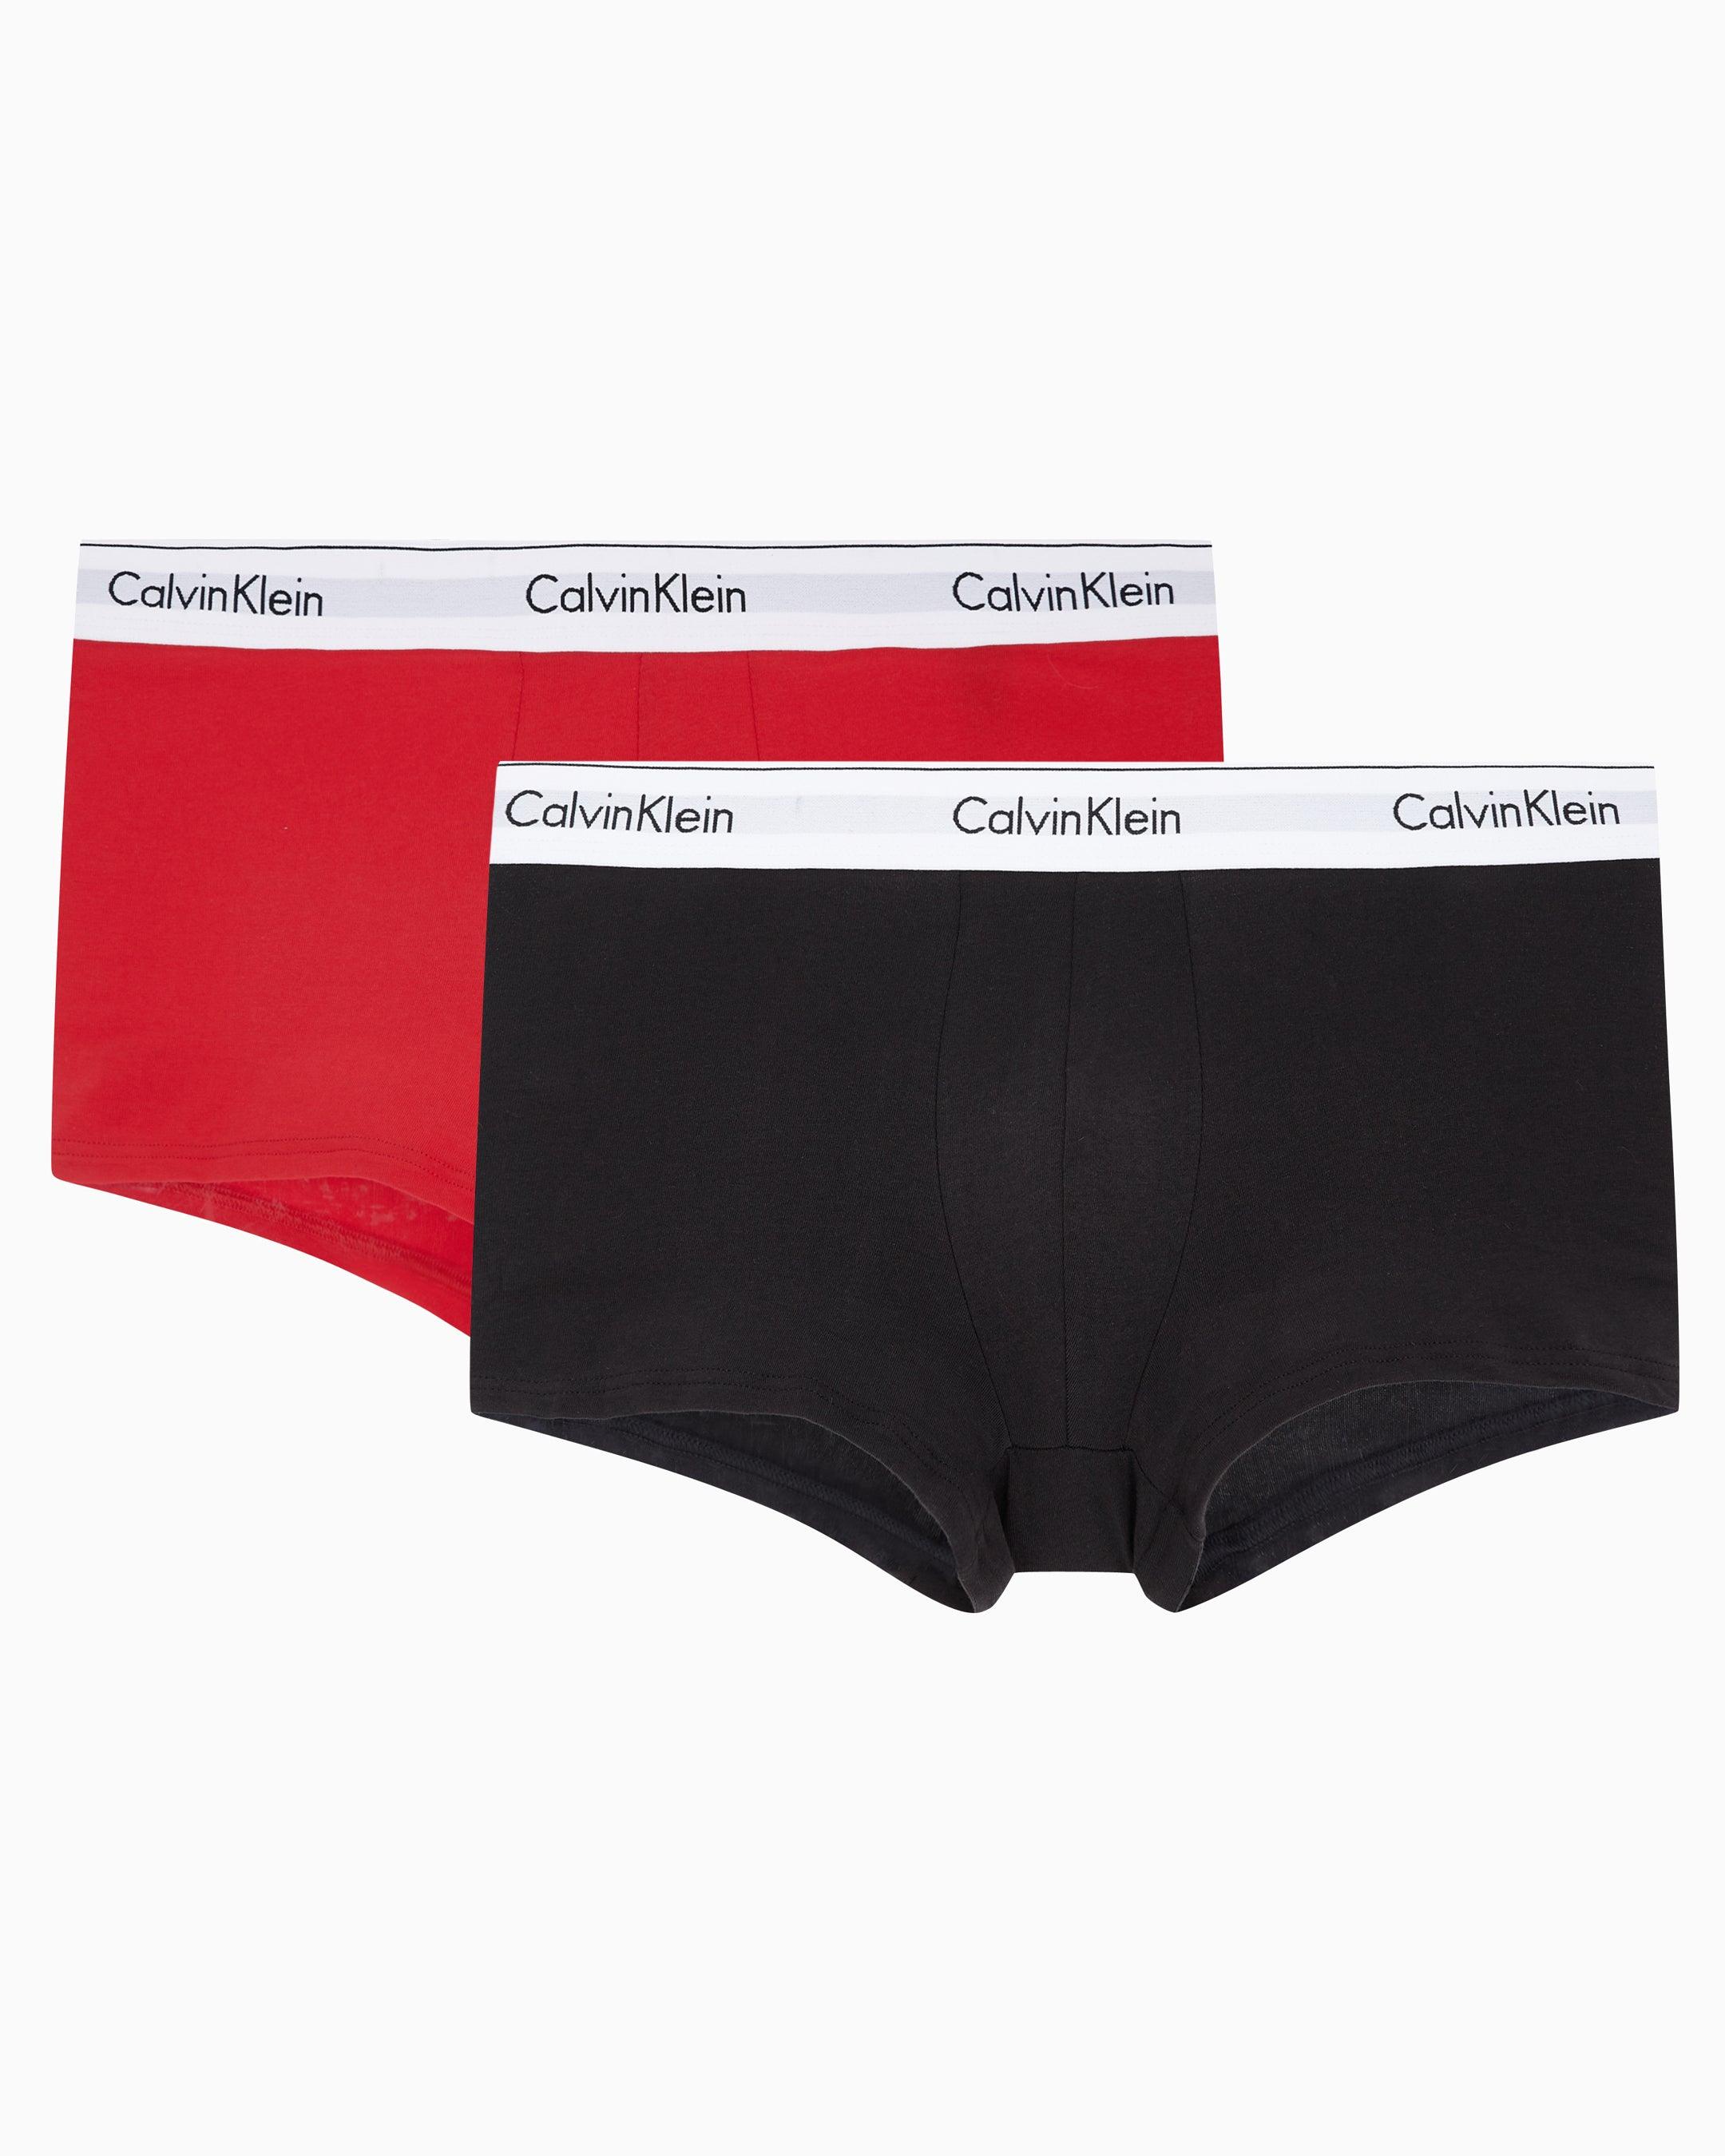 calvin klein underwear: Men